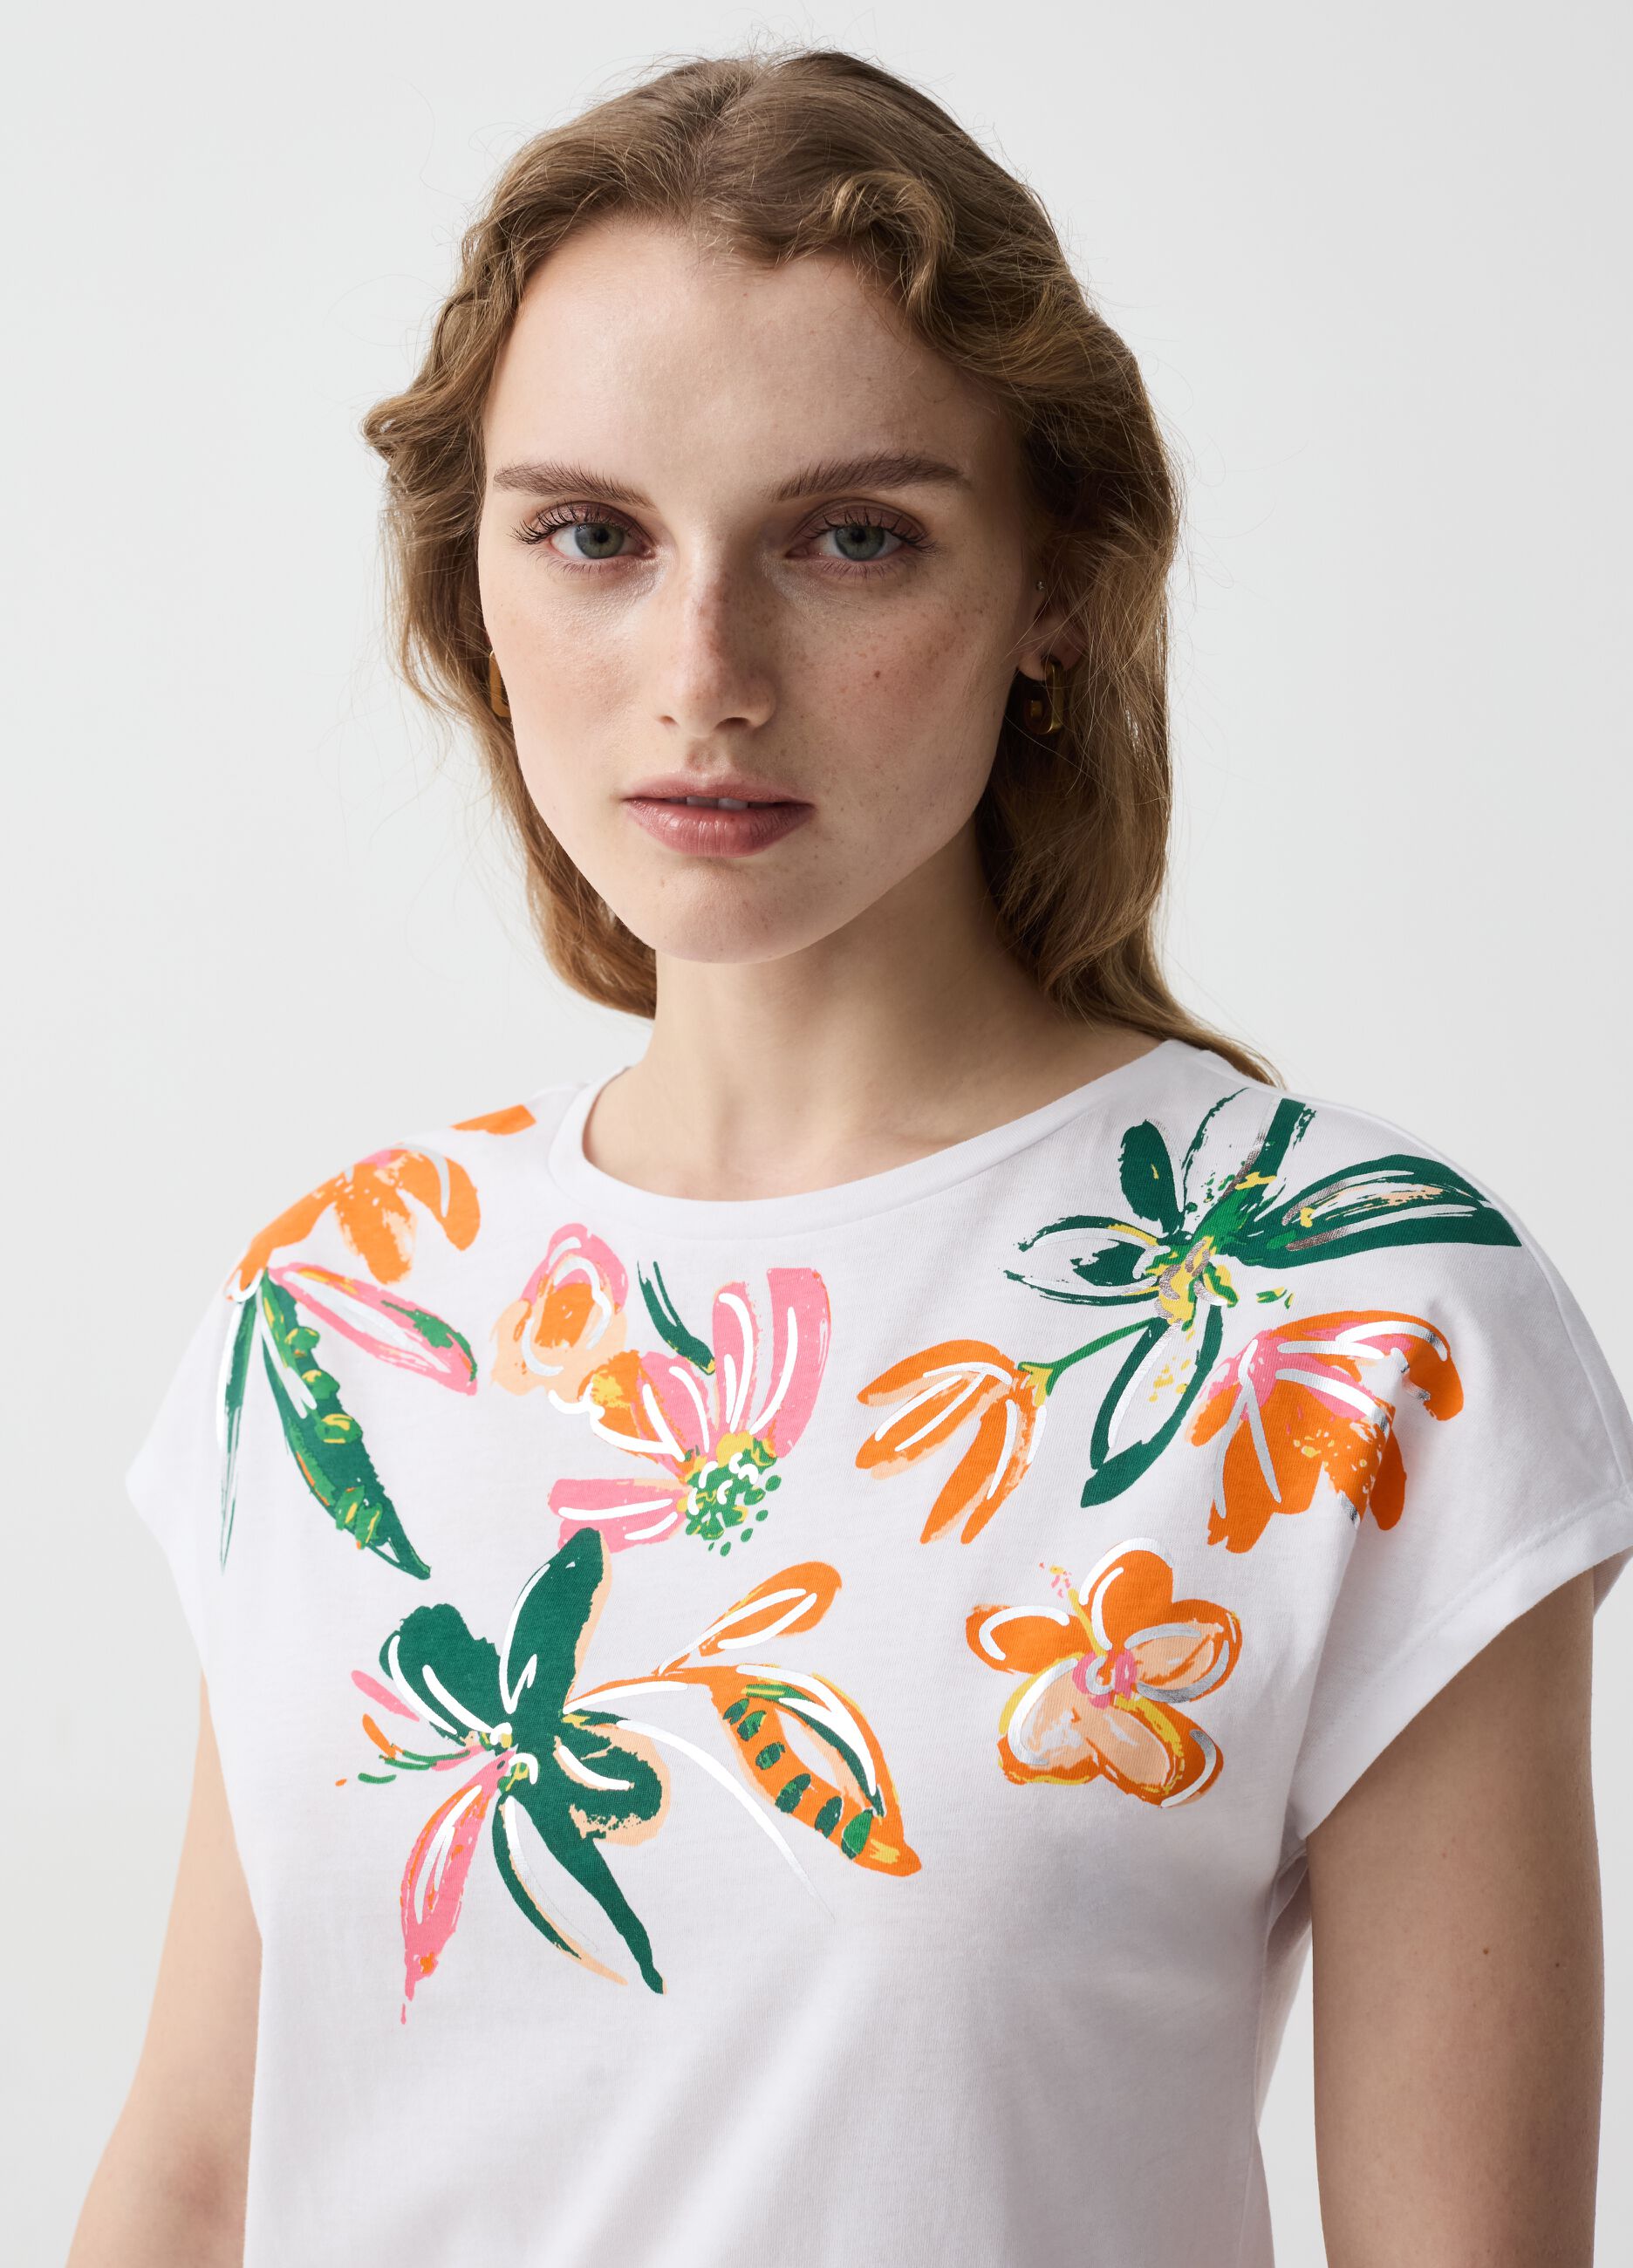 T-shirt stampa a fiori con dettagli in foil